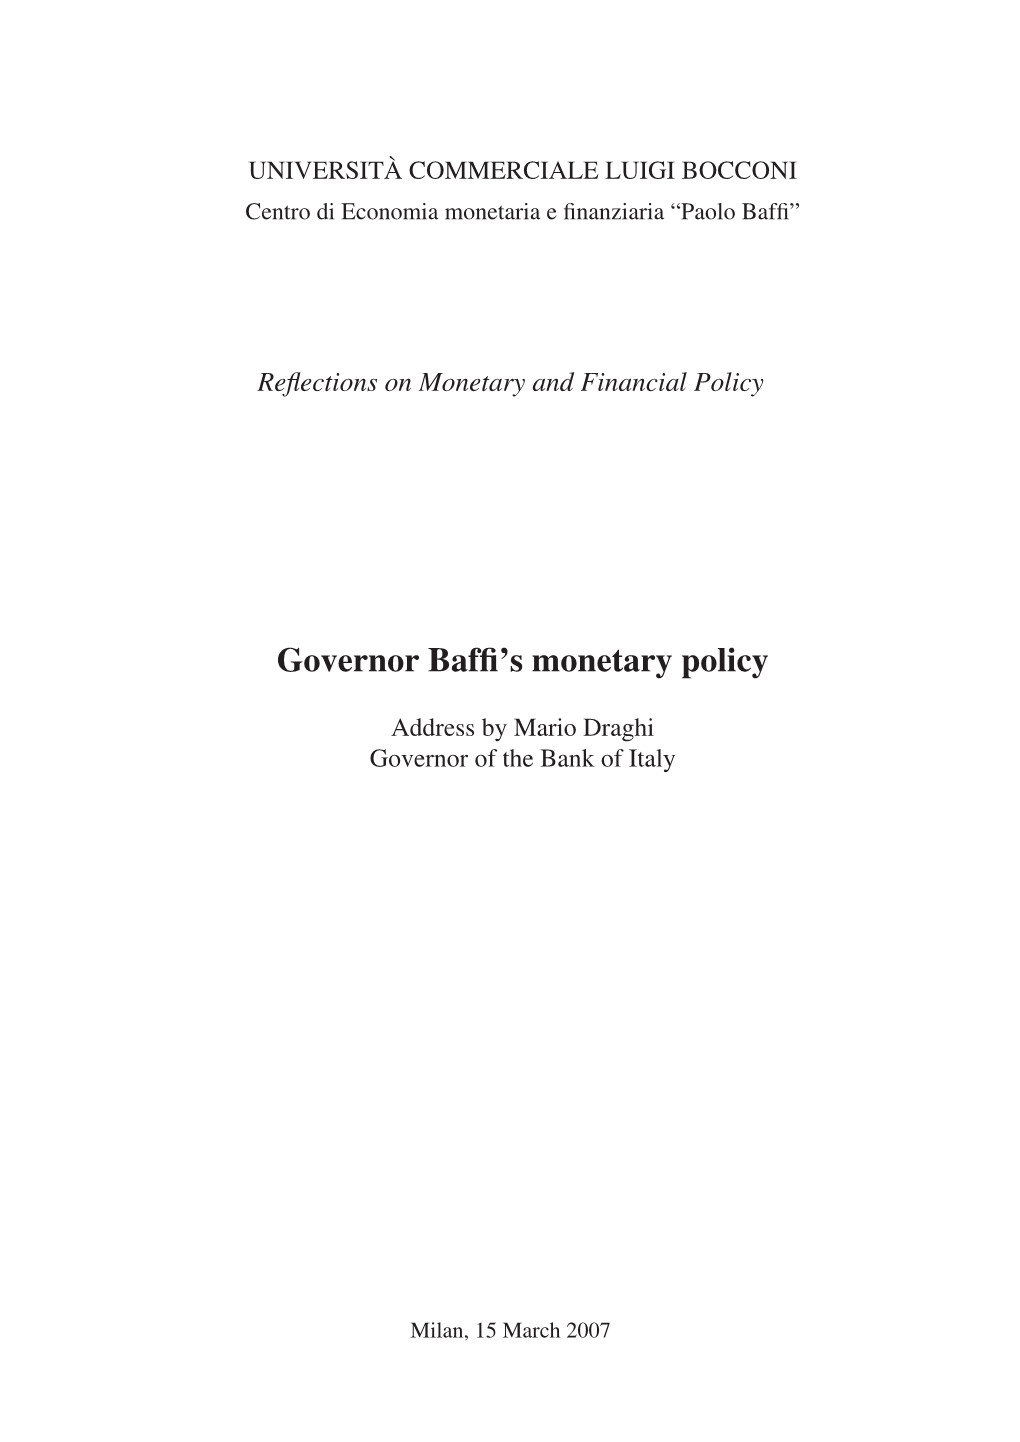 Governor Baffi's Monetary Policy